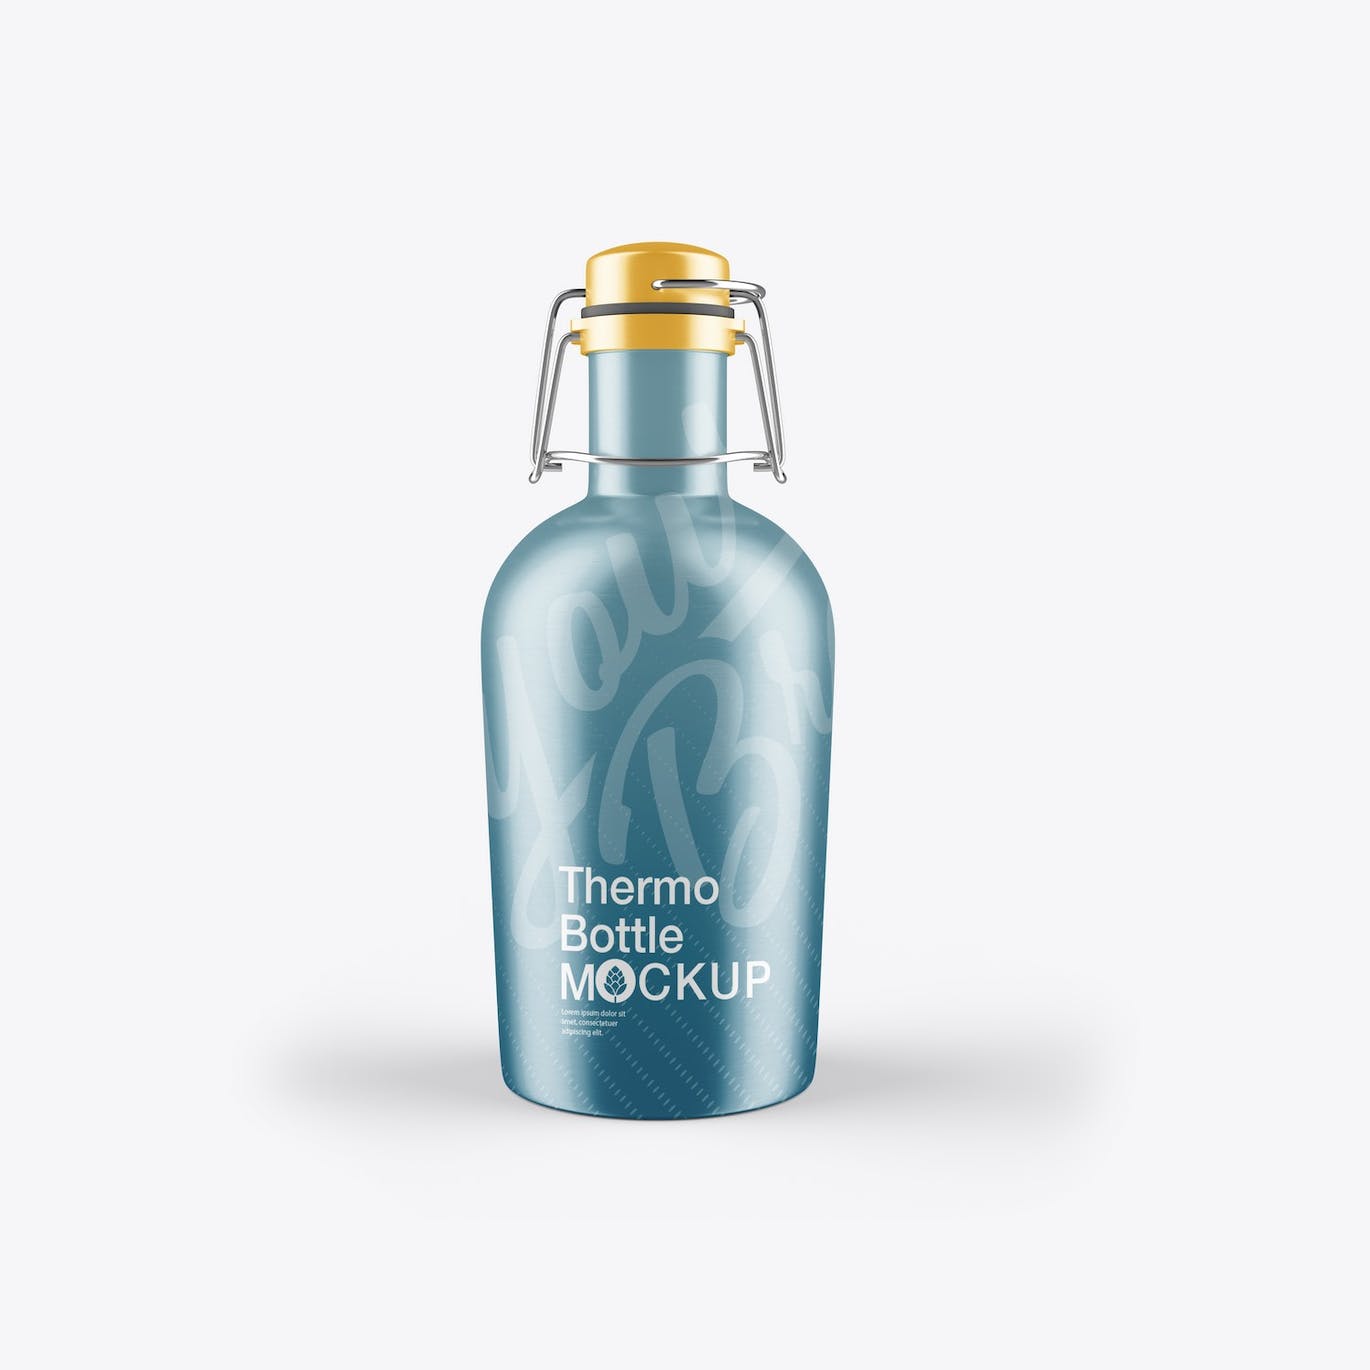 金属热水瓶包装设计样机 Thermo Bottle Mockup 样机素材 第2张